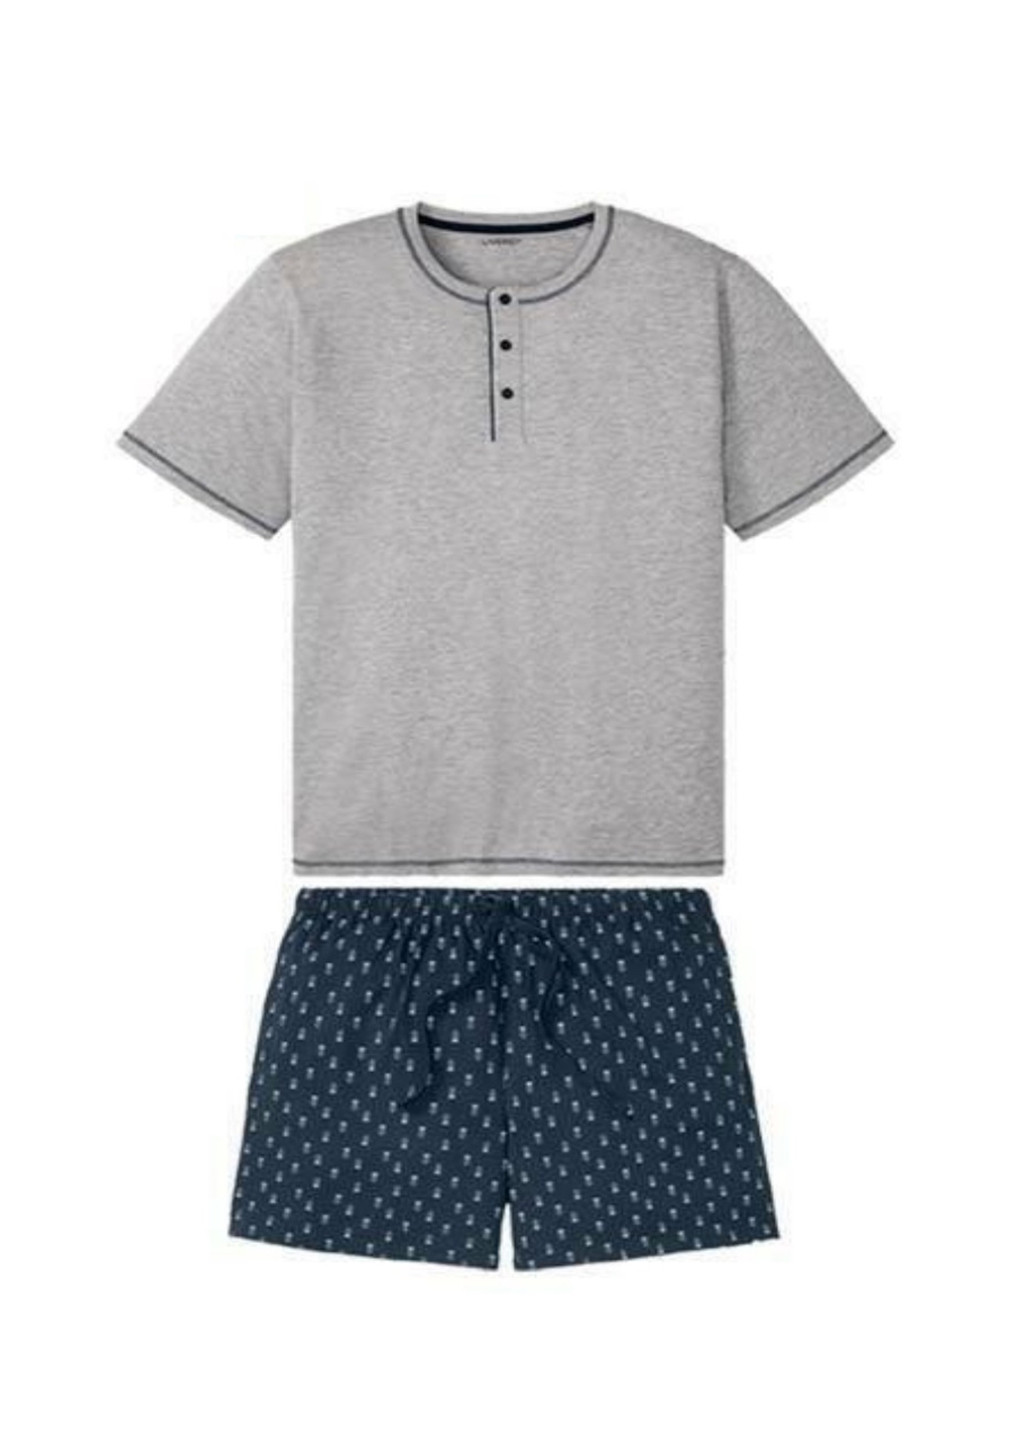 Пижама (футболка, шорты) Livergy футболка + шорты меланж светло-серая домашняя трикотаж, хлопок